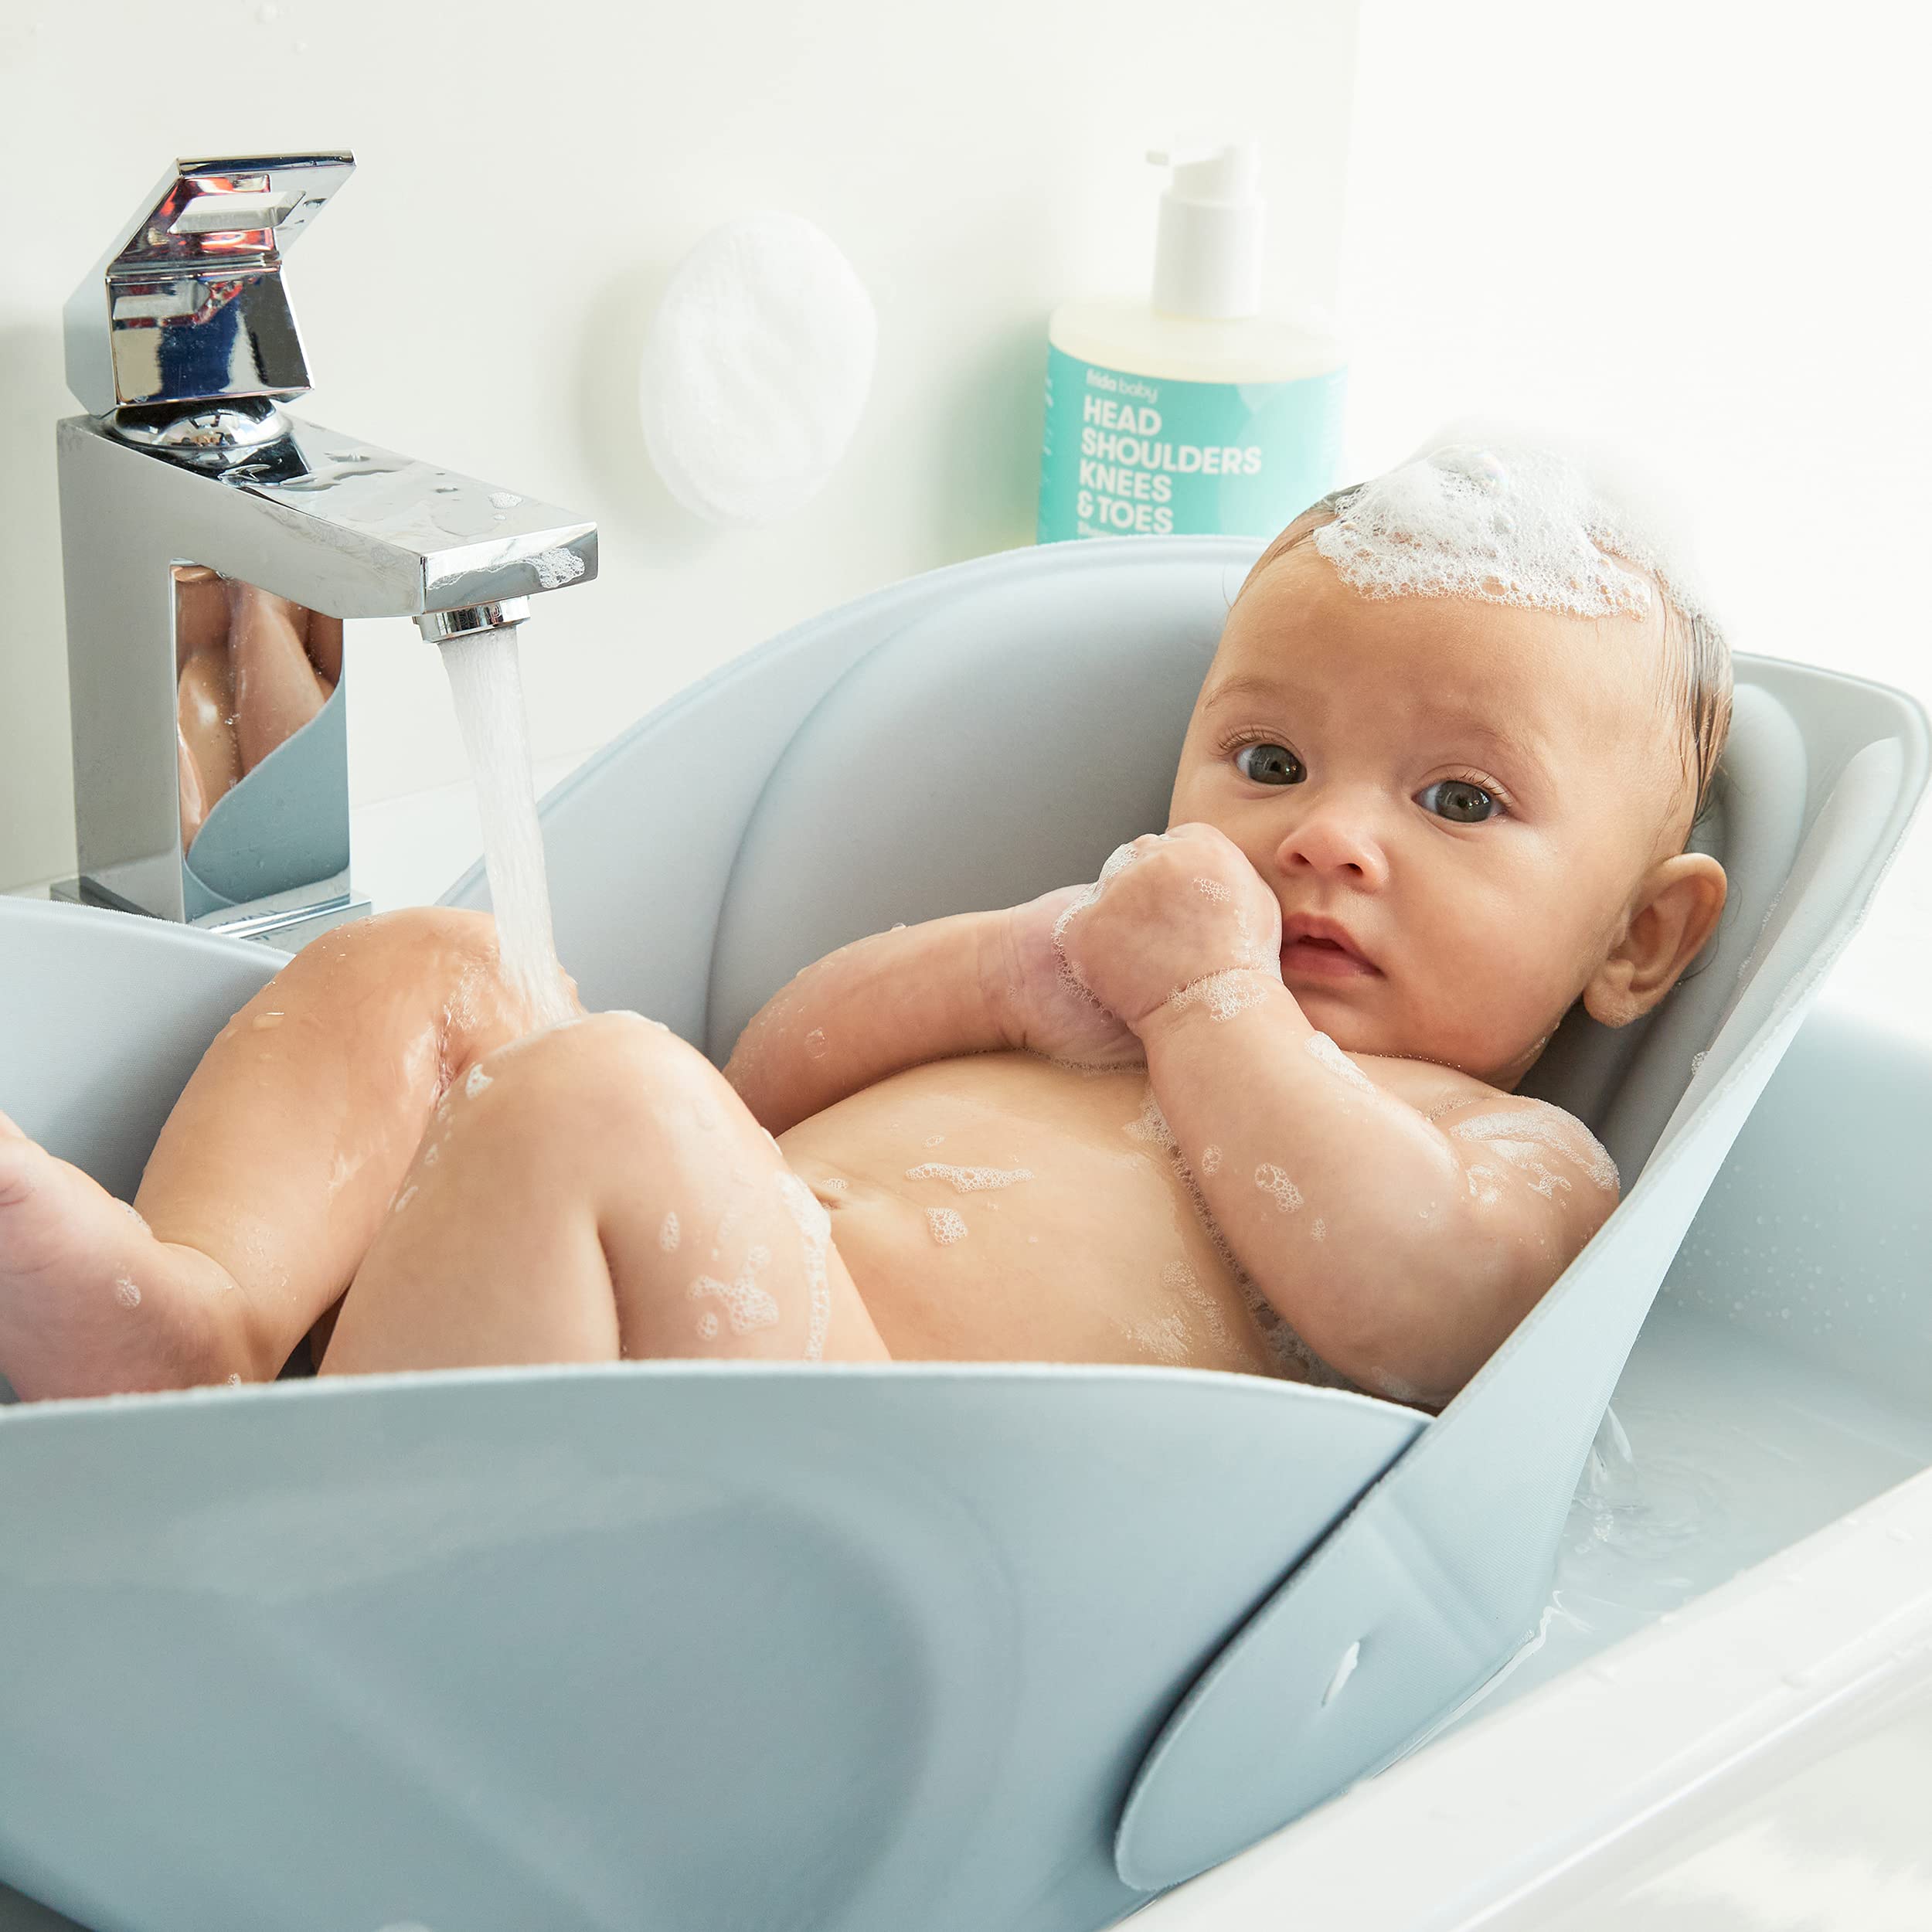 FridaBaby Soft Sink Baby Bath by Frida Baby Easy to clean Baby Bathtub + Bath  cushion That Supports Babys Head